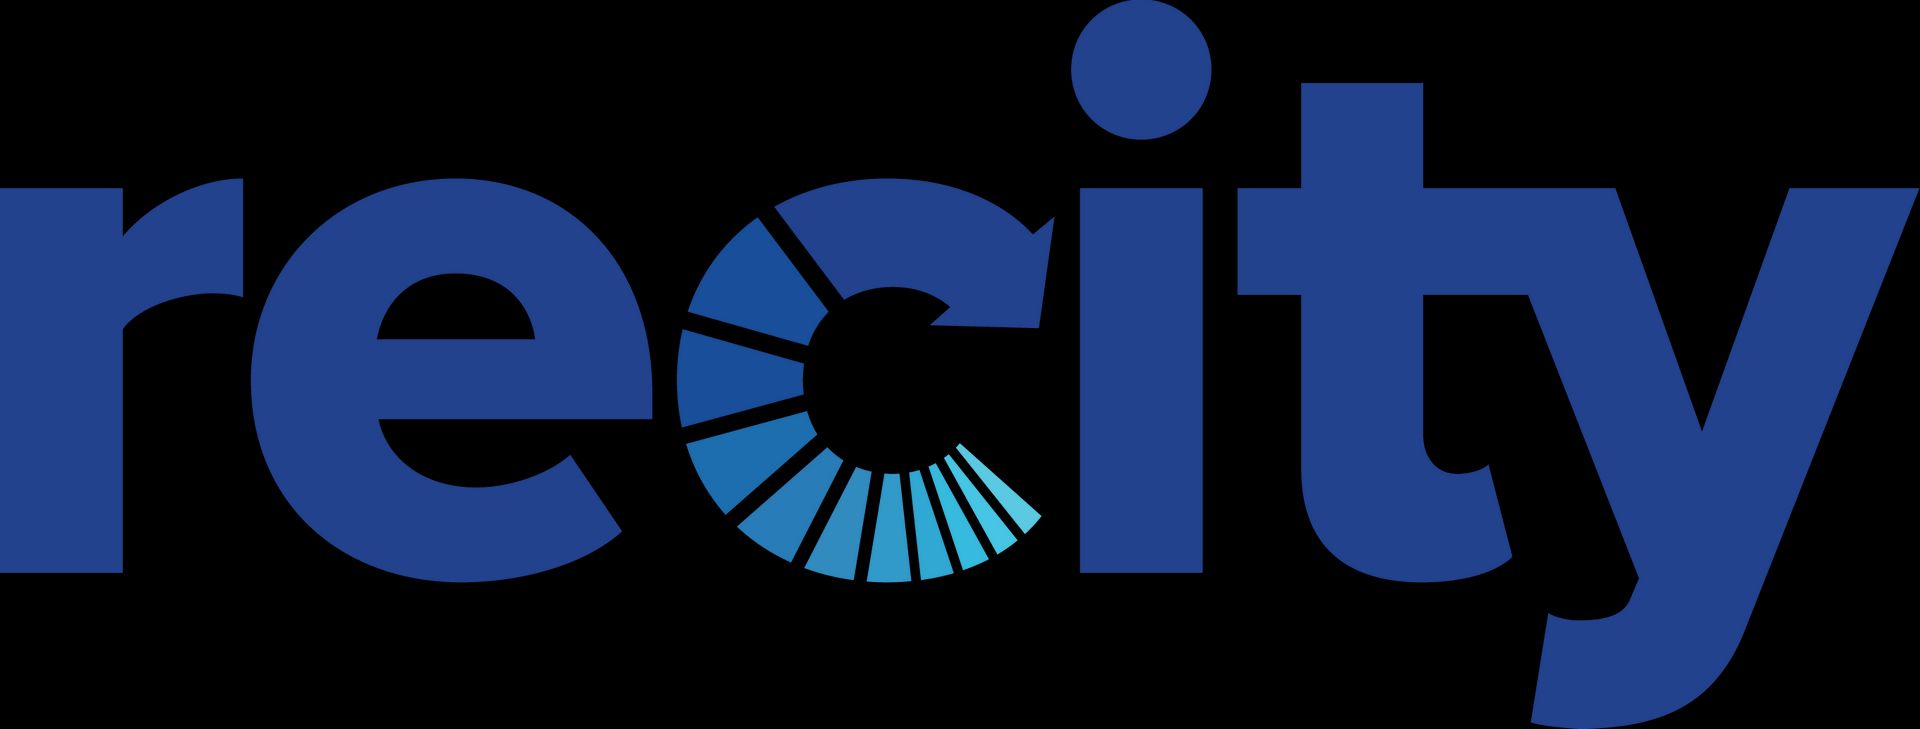 Recity Network Private Limited: Create Circular Economy in Plastics in ...